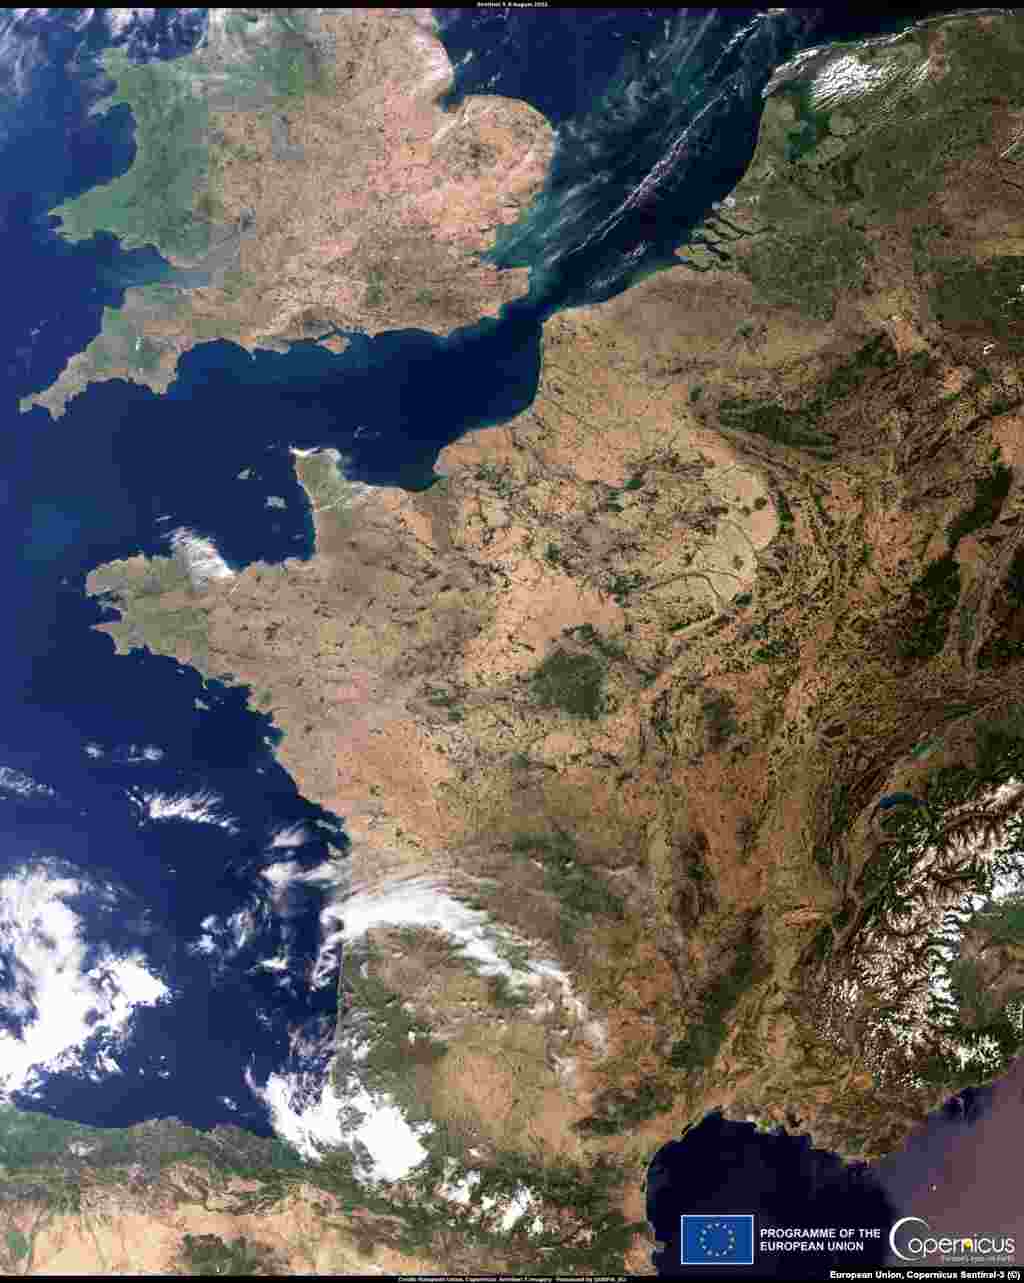 Nyugat-Európát is nagy szárazság sújtja. A Kopernikusz műhold Nagy-Britannia déli és Franciaország északi részéről készült felvételein jól láthatók az aszály nyomai